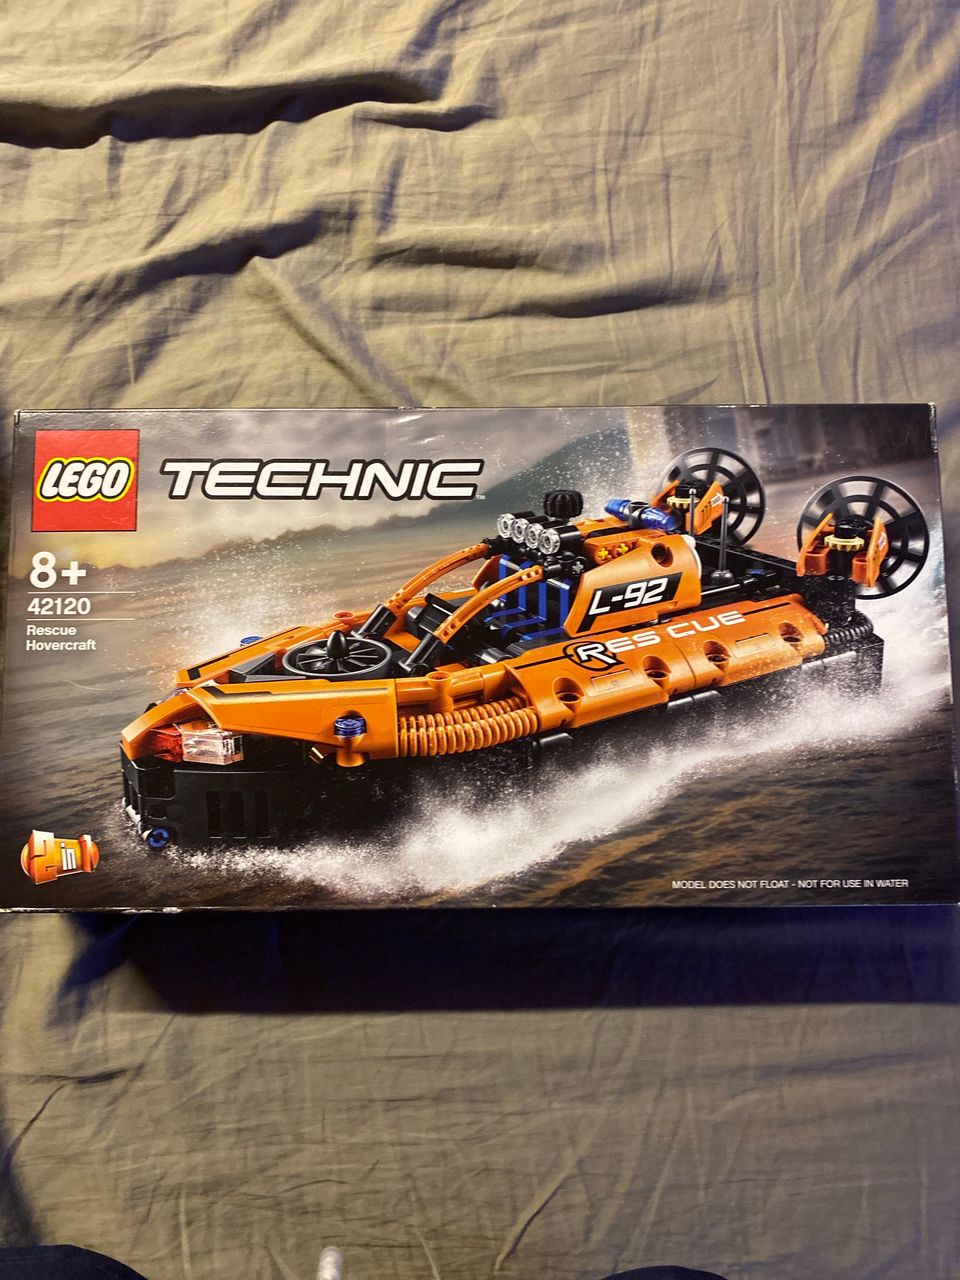 LEGO techinc 42120